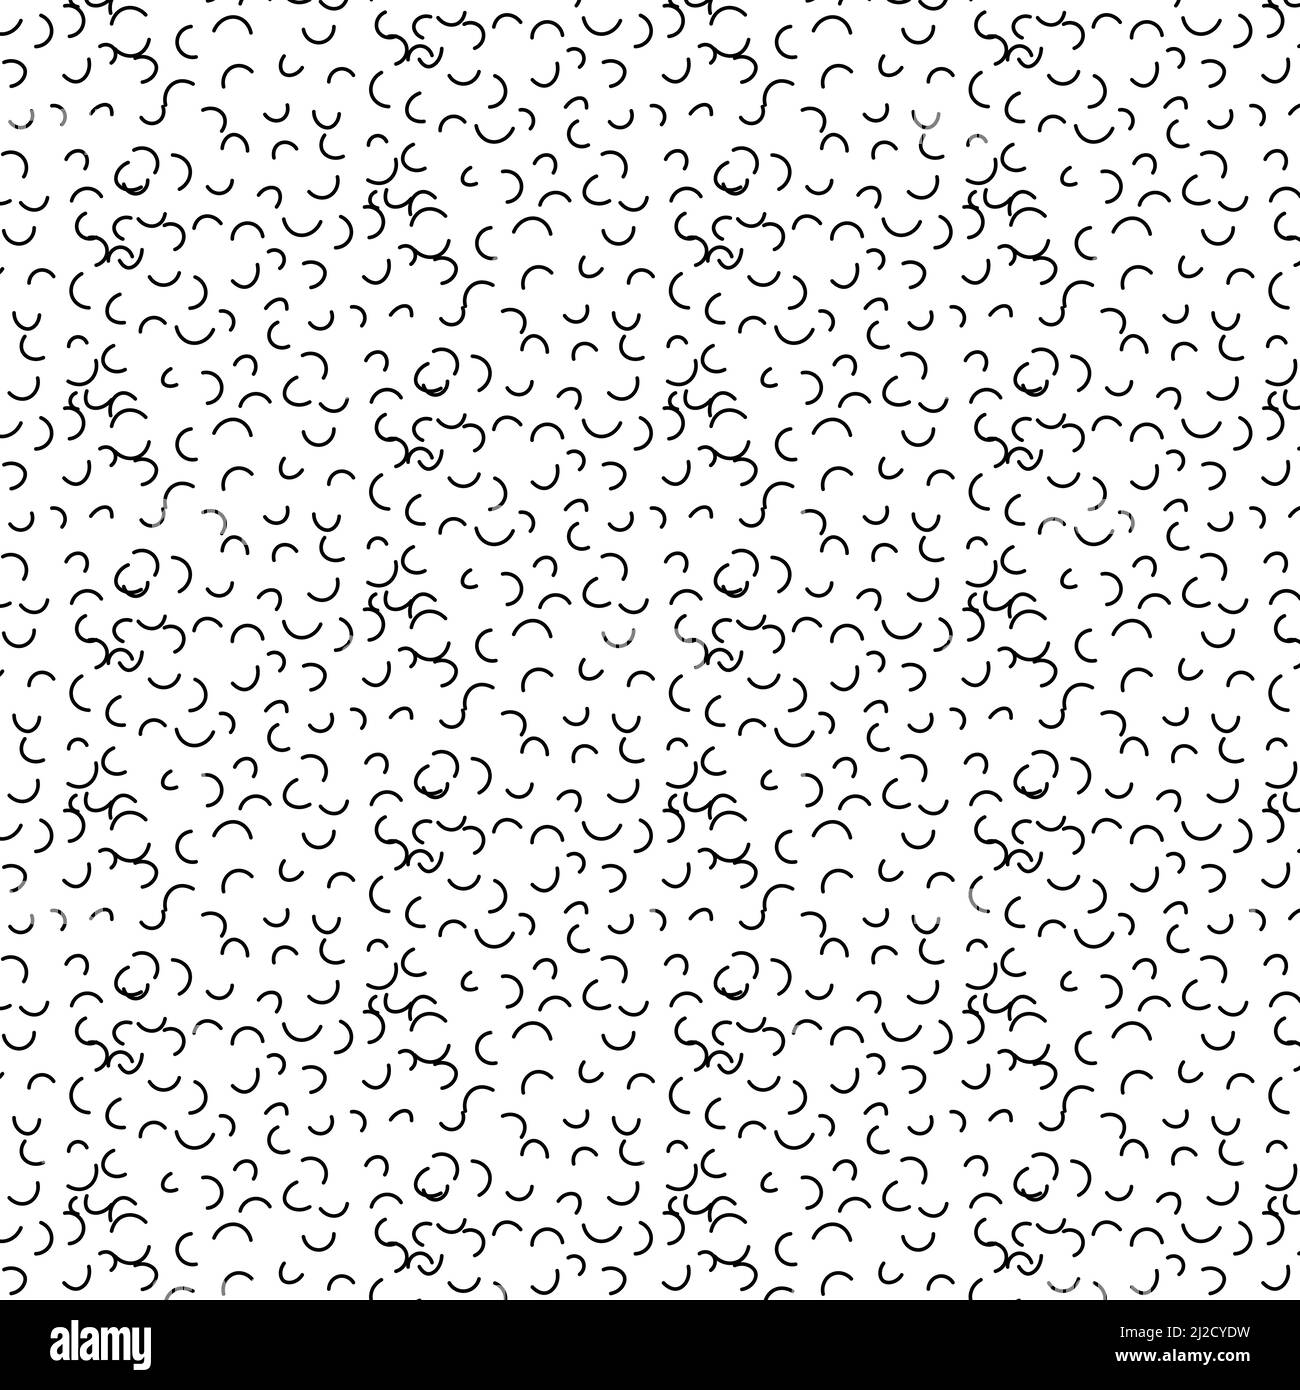 Zen art Doodle ornato sfondo astratto. Squadroni lineari in bianco e nero disegnati a mano. Texture creativa in bianco e nero zenart. Ripetizione casuale disegno caotico della superficie a zentangle. Illustrazione vettoriale Illustrazione Vettoriale